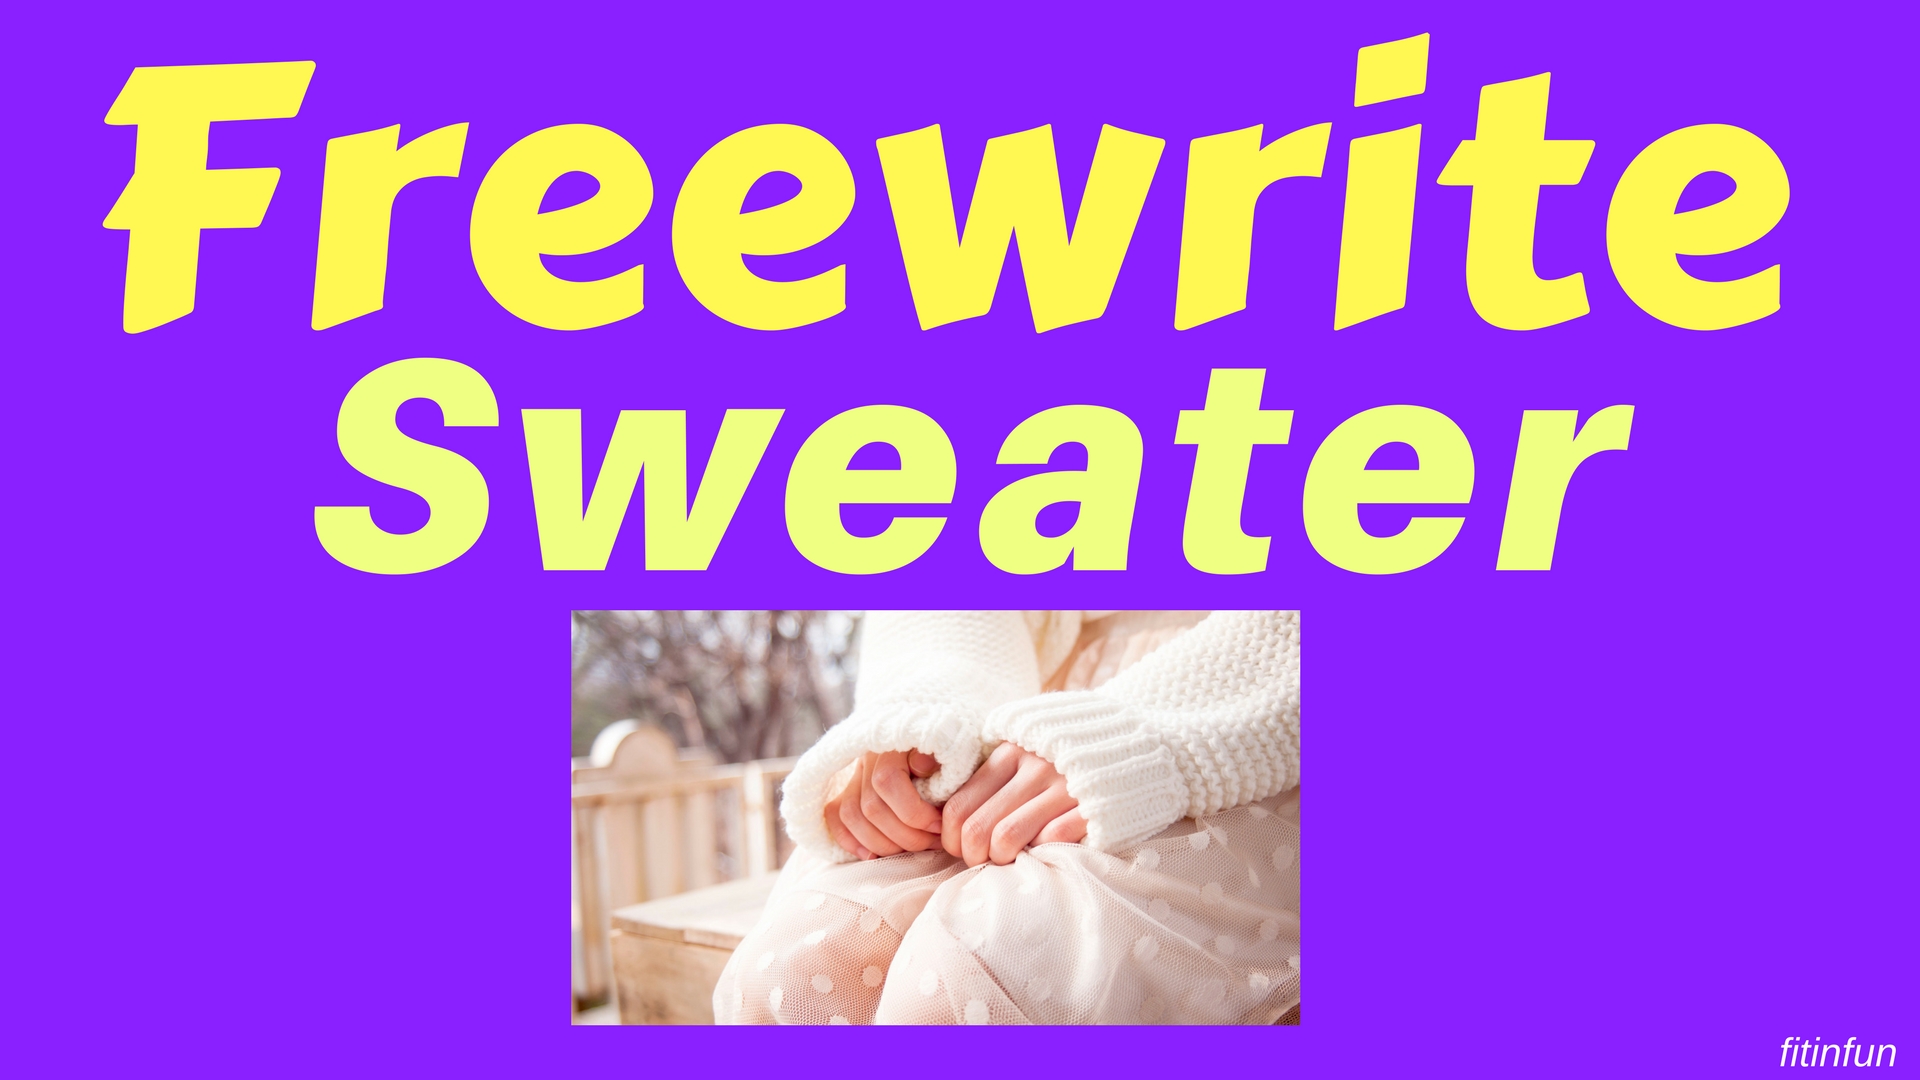 freewrite sweater fitinfun.jpg